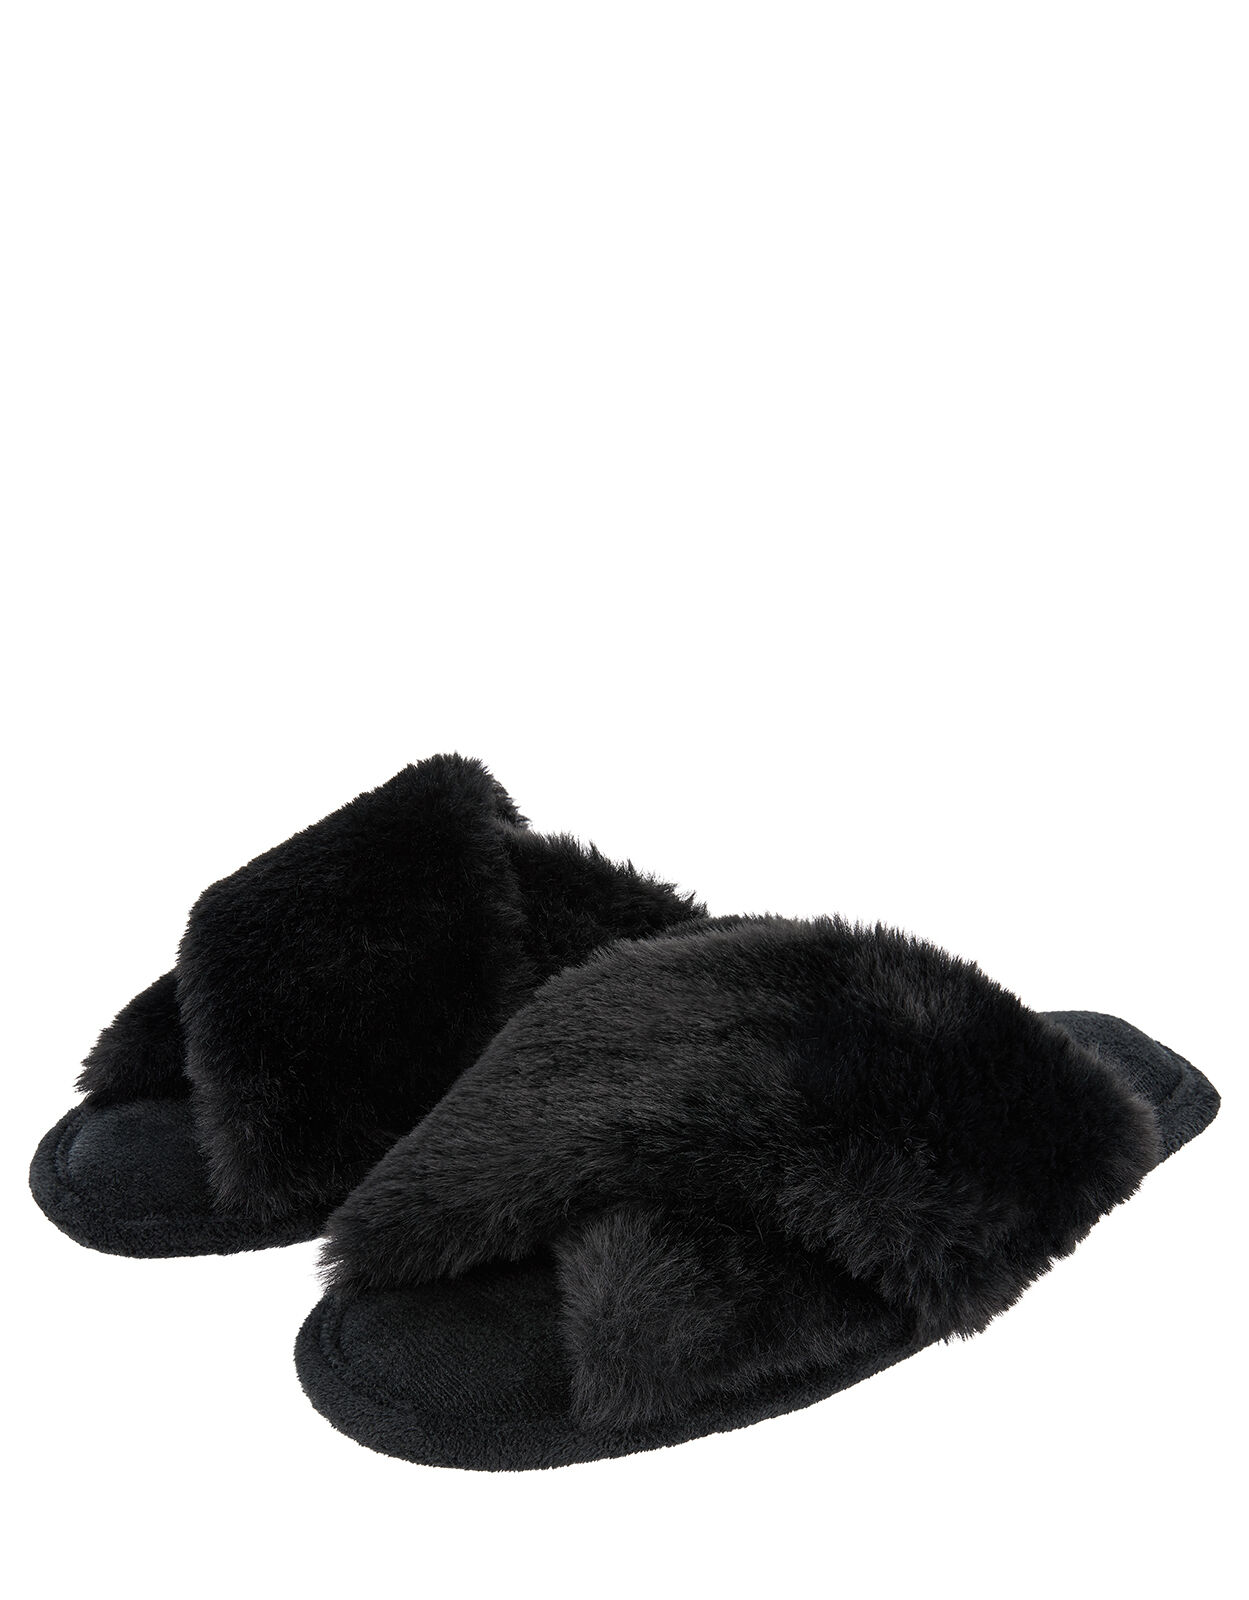 black fluffy slippers